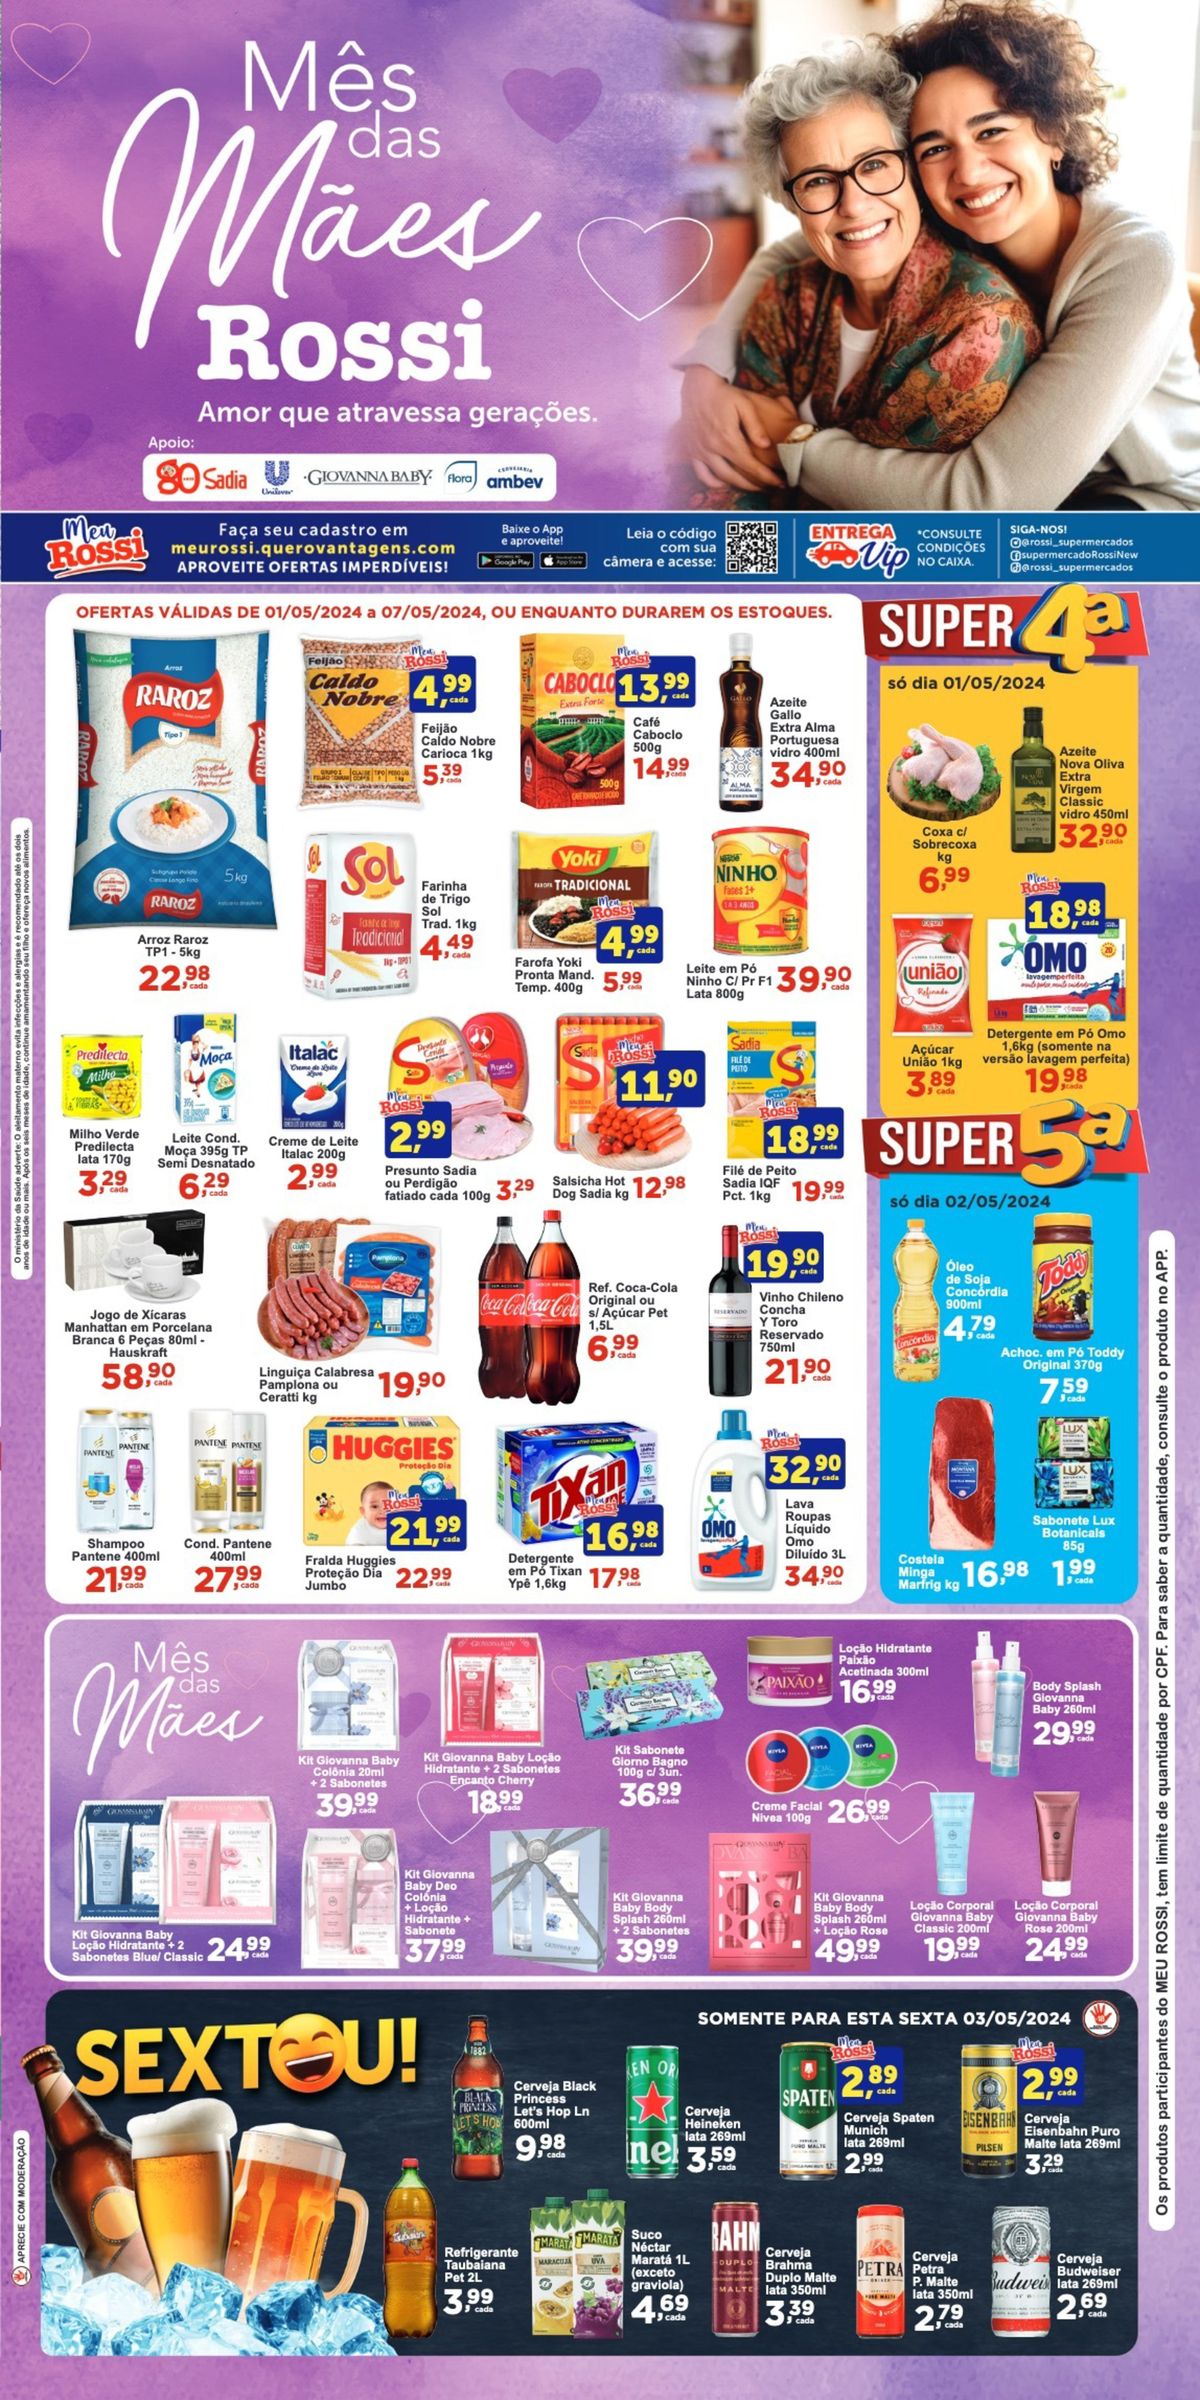 Ofertas em Supermercado, Ofertas Rossi Supermercados, 07-05-2024, Rossi Supermercados